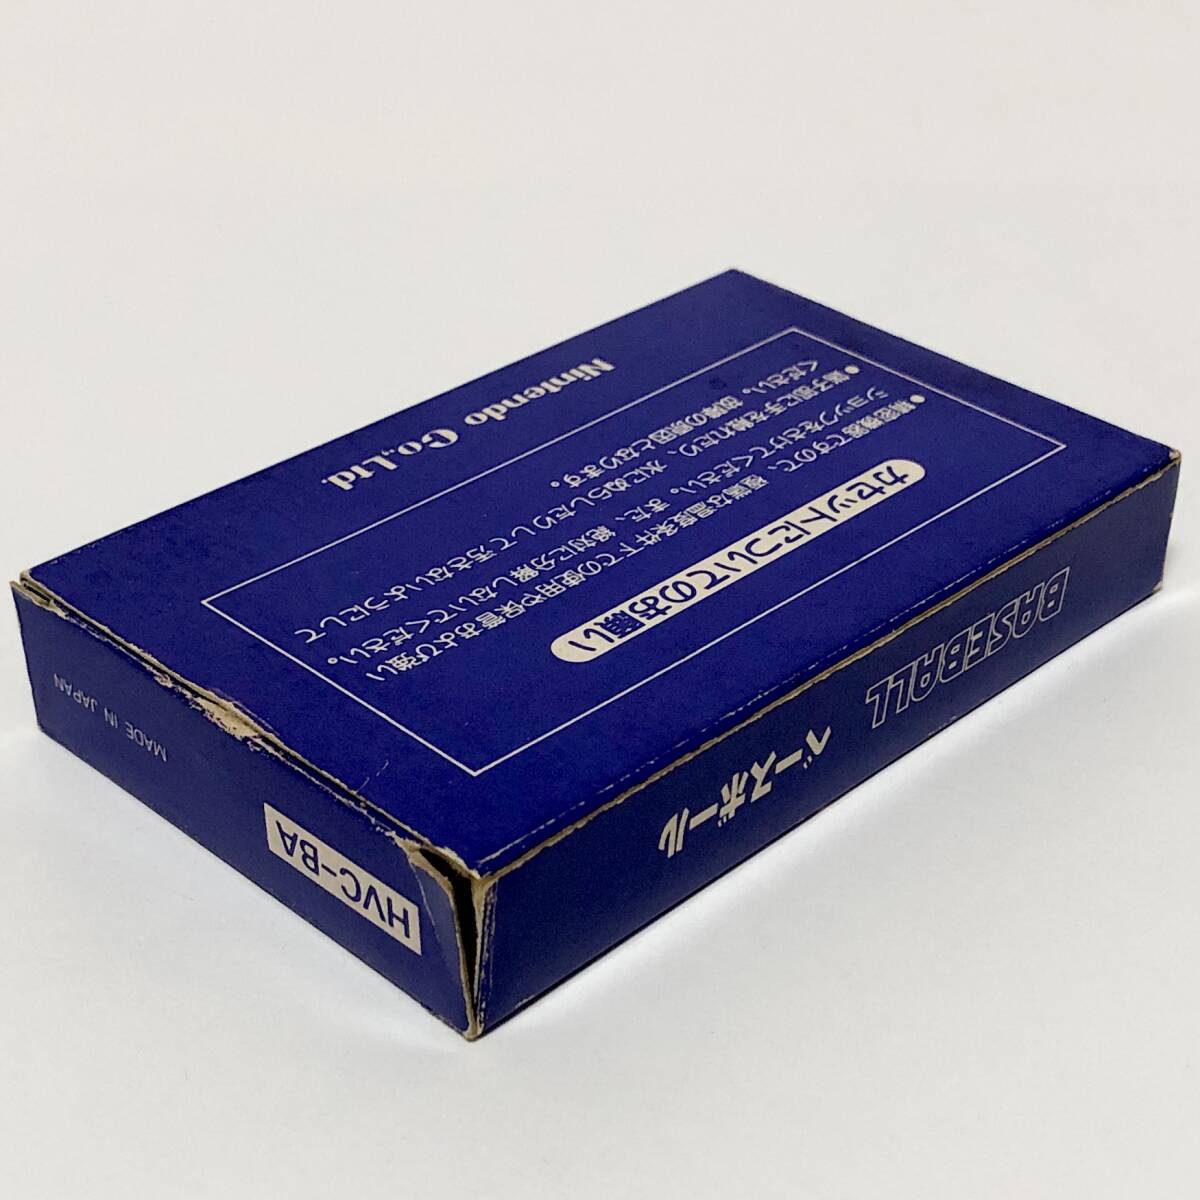 ファミコン ベースボール 小箱版 箱説付き 痛みあり 操作法早見図付き Nintendo Famicom Baseball Small Box Version CIB Tested_画像6